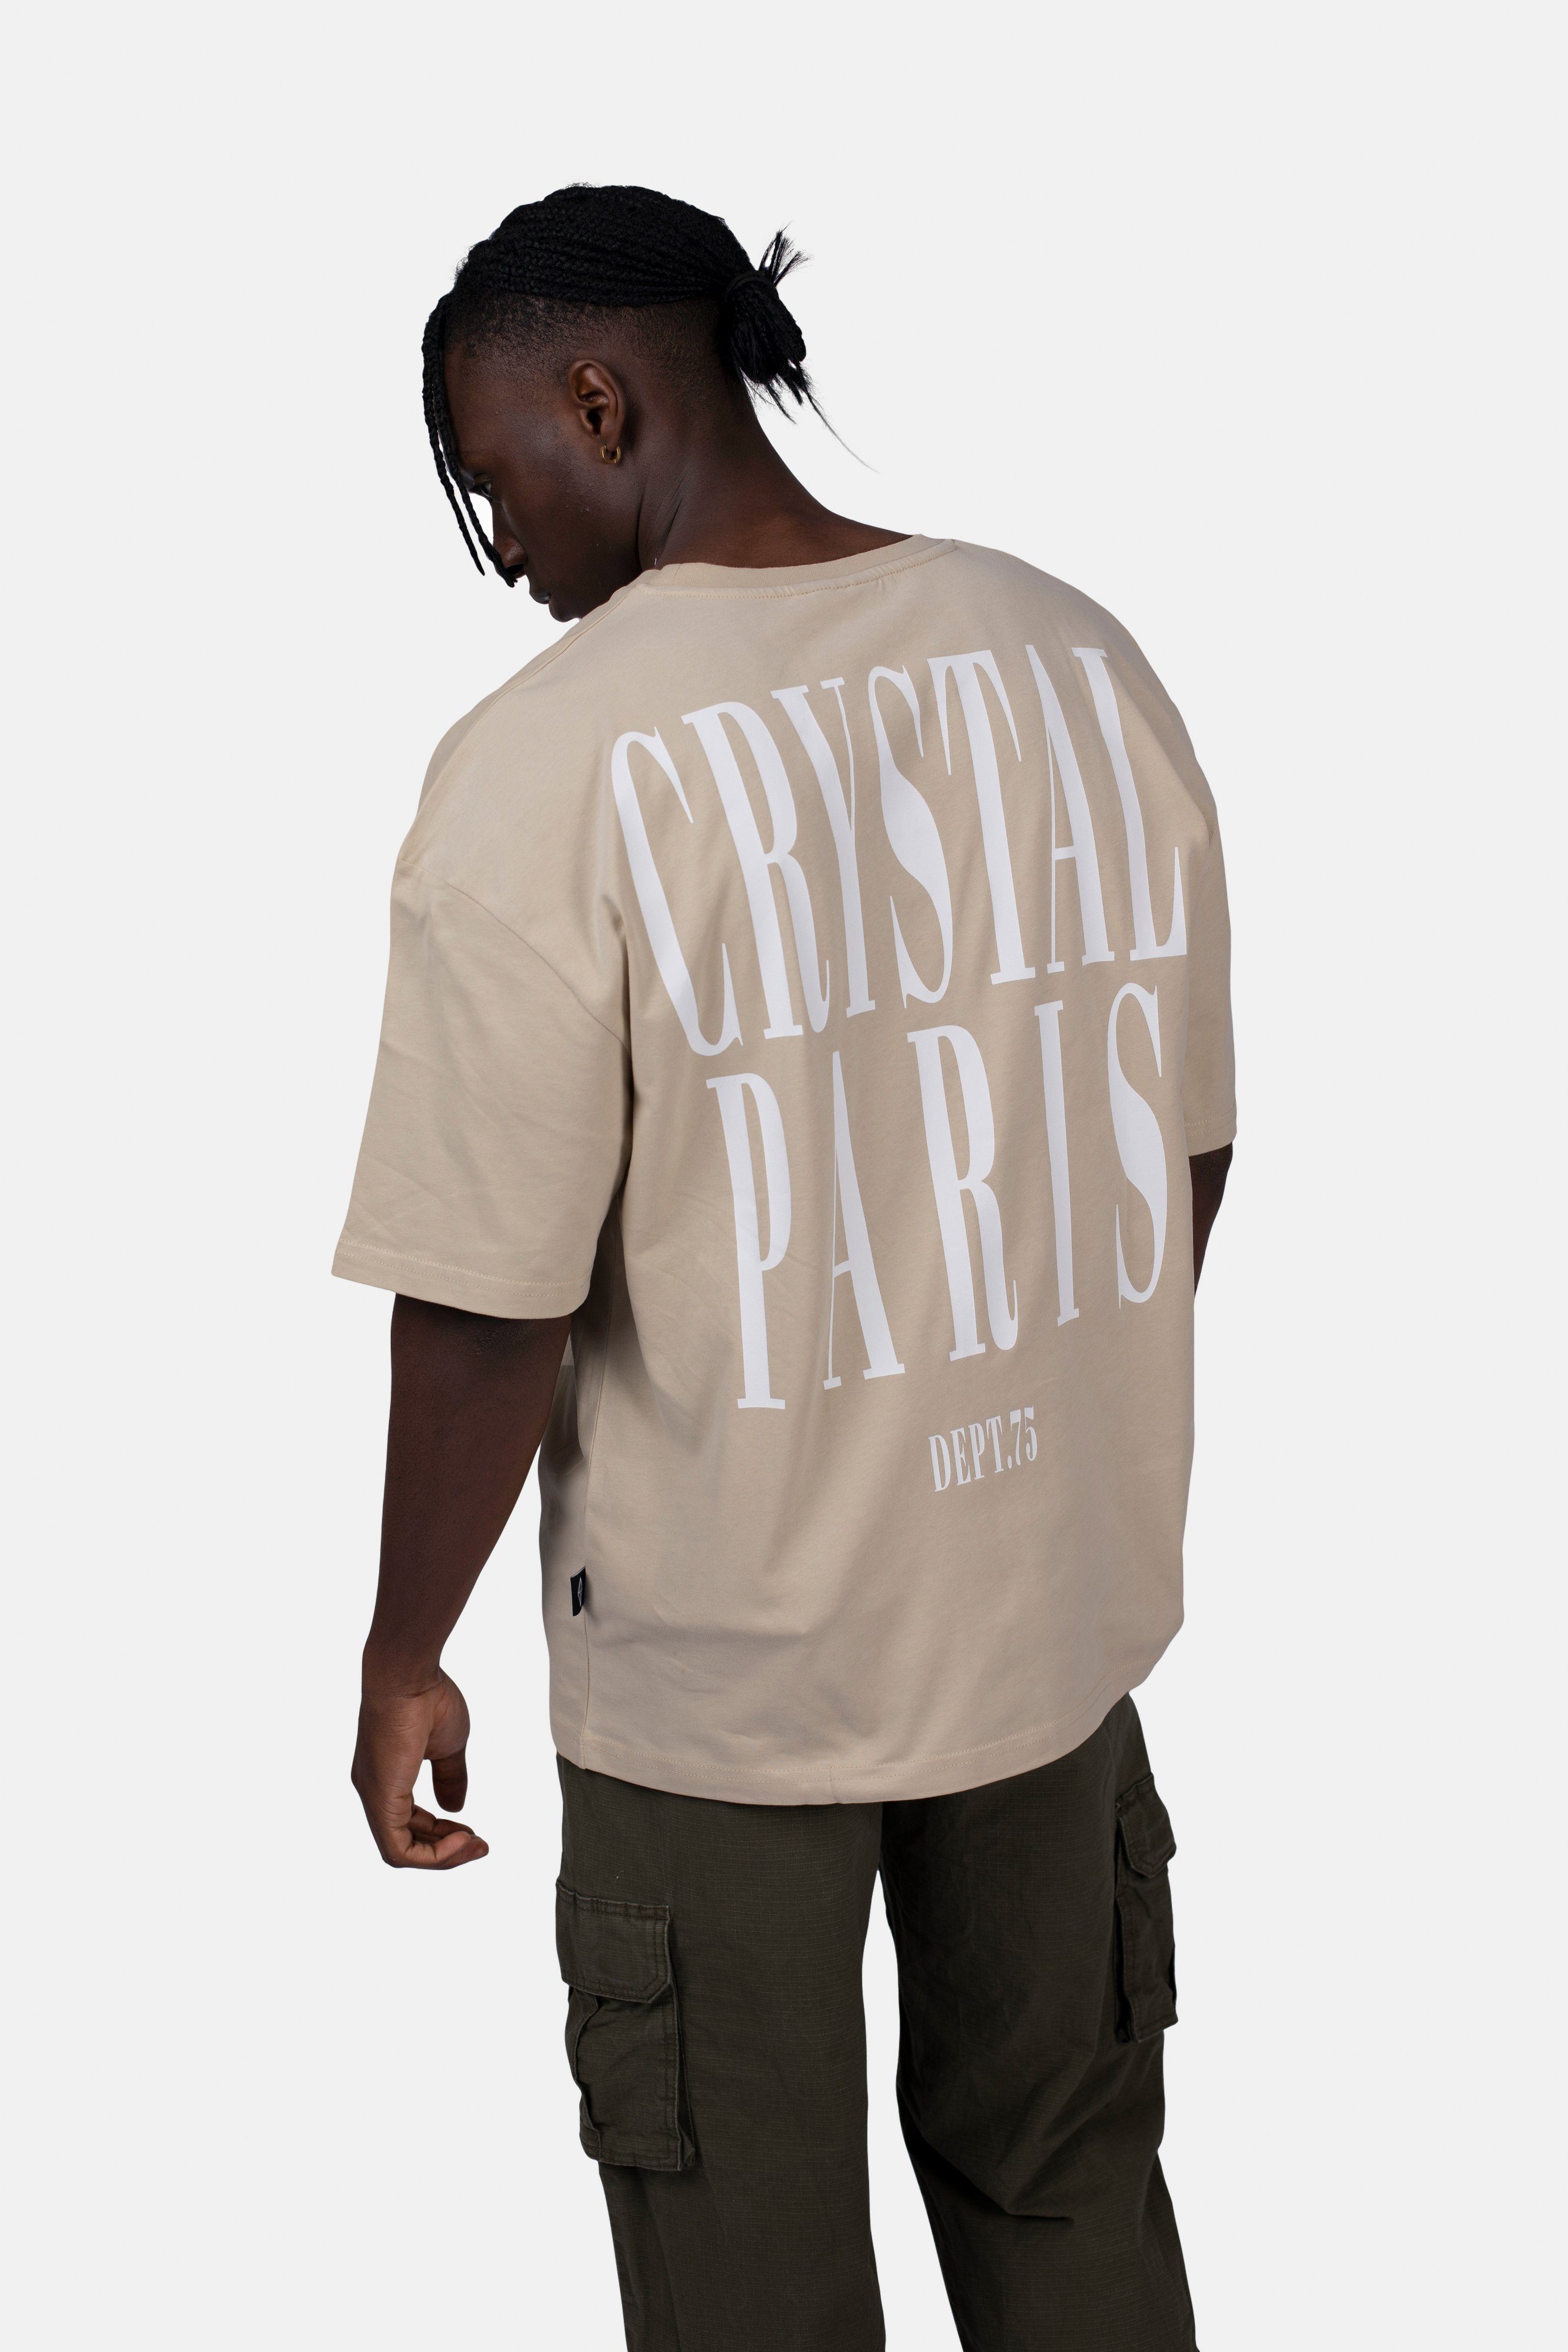 Crystal Paris Oversize-Shirt Face